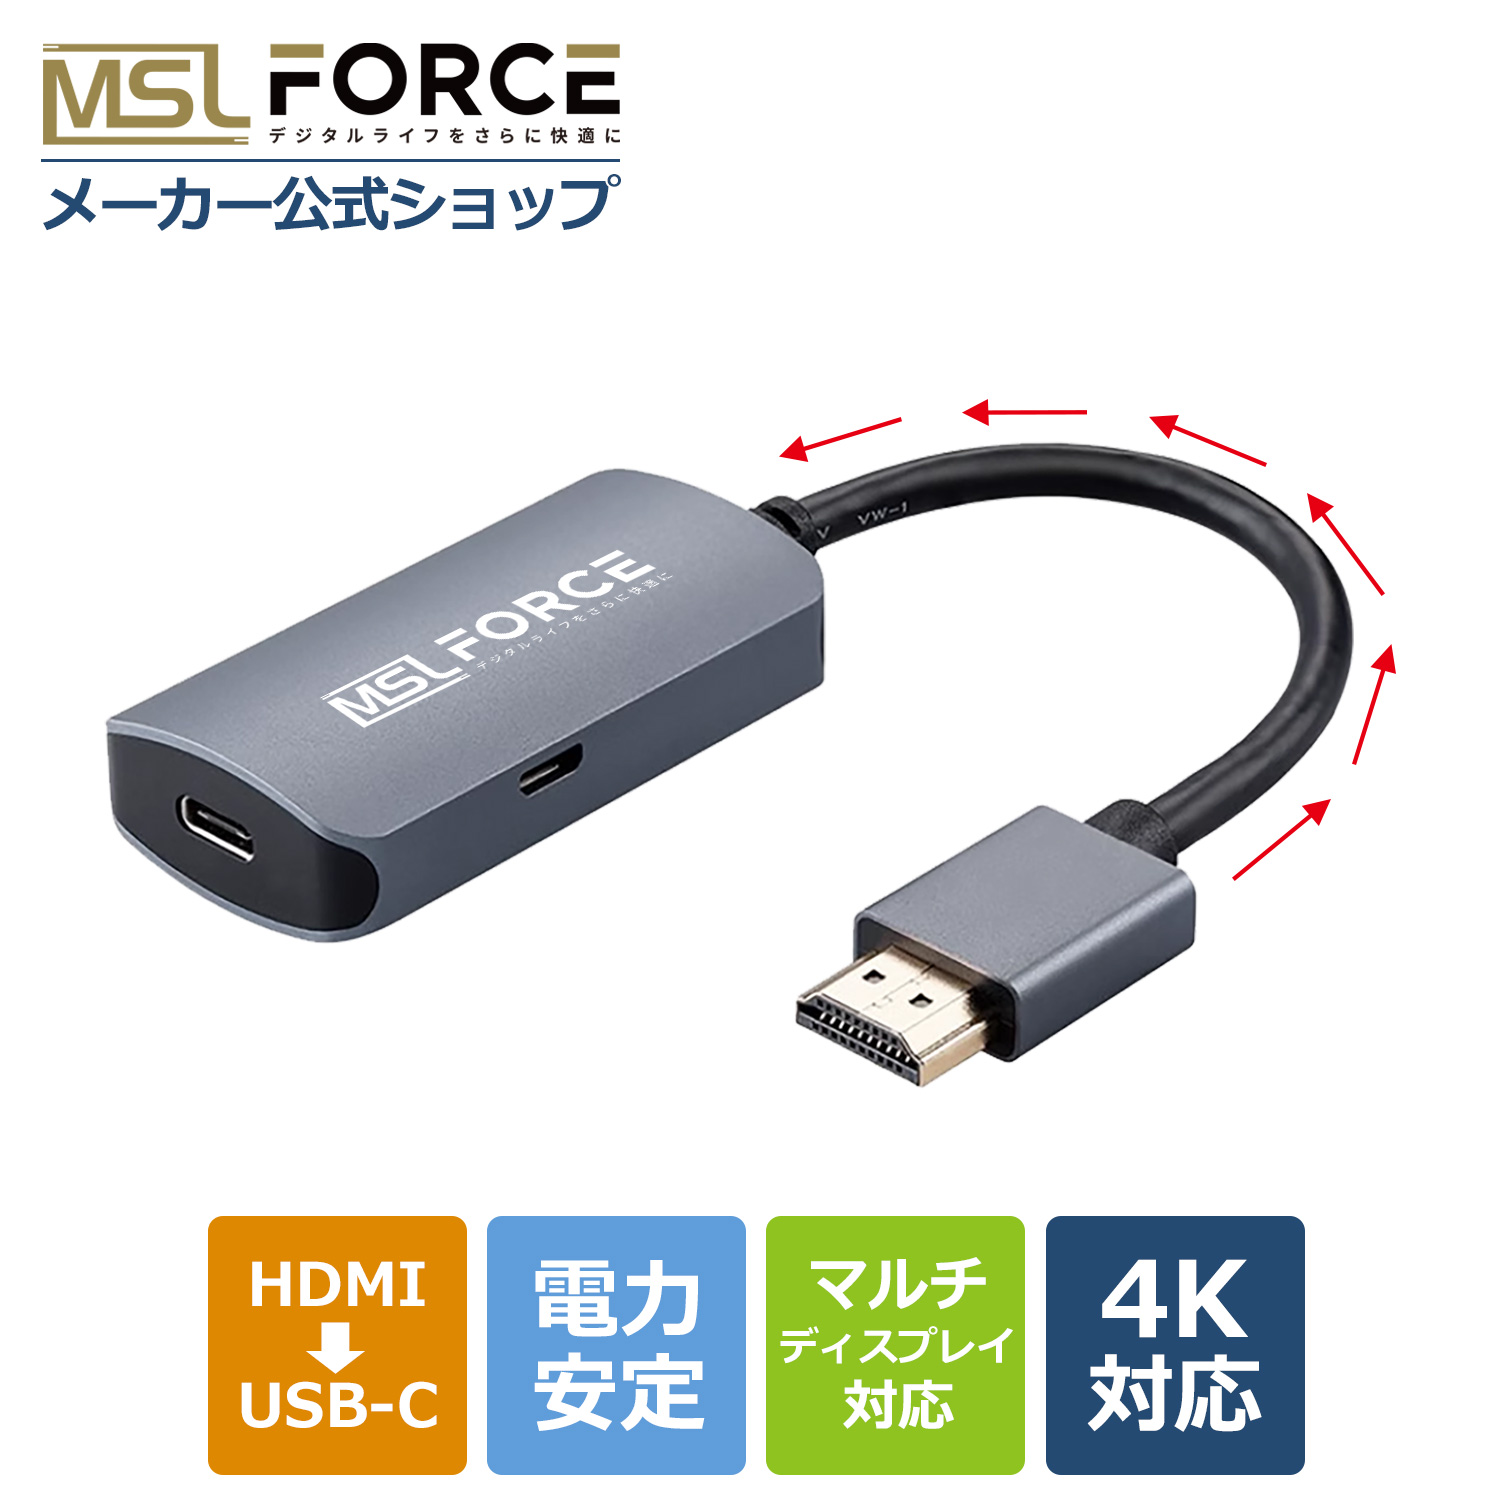 本日最大600円引き HDMI to USB C Type-C変換アダプタ ウルトラHD 4K/60hz  モニター AI 搭載メガネ対応 Switch対応 適格請求書発行可 hd2usbc 送料無料